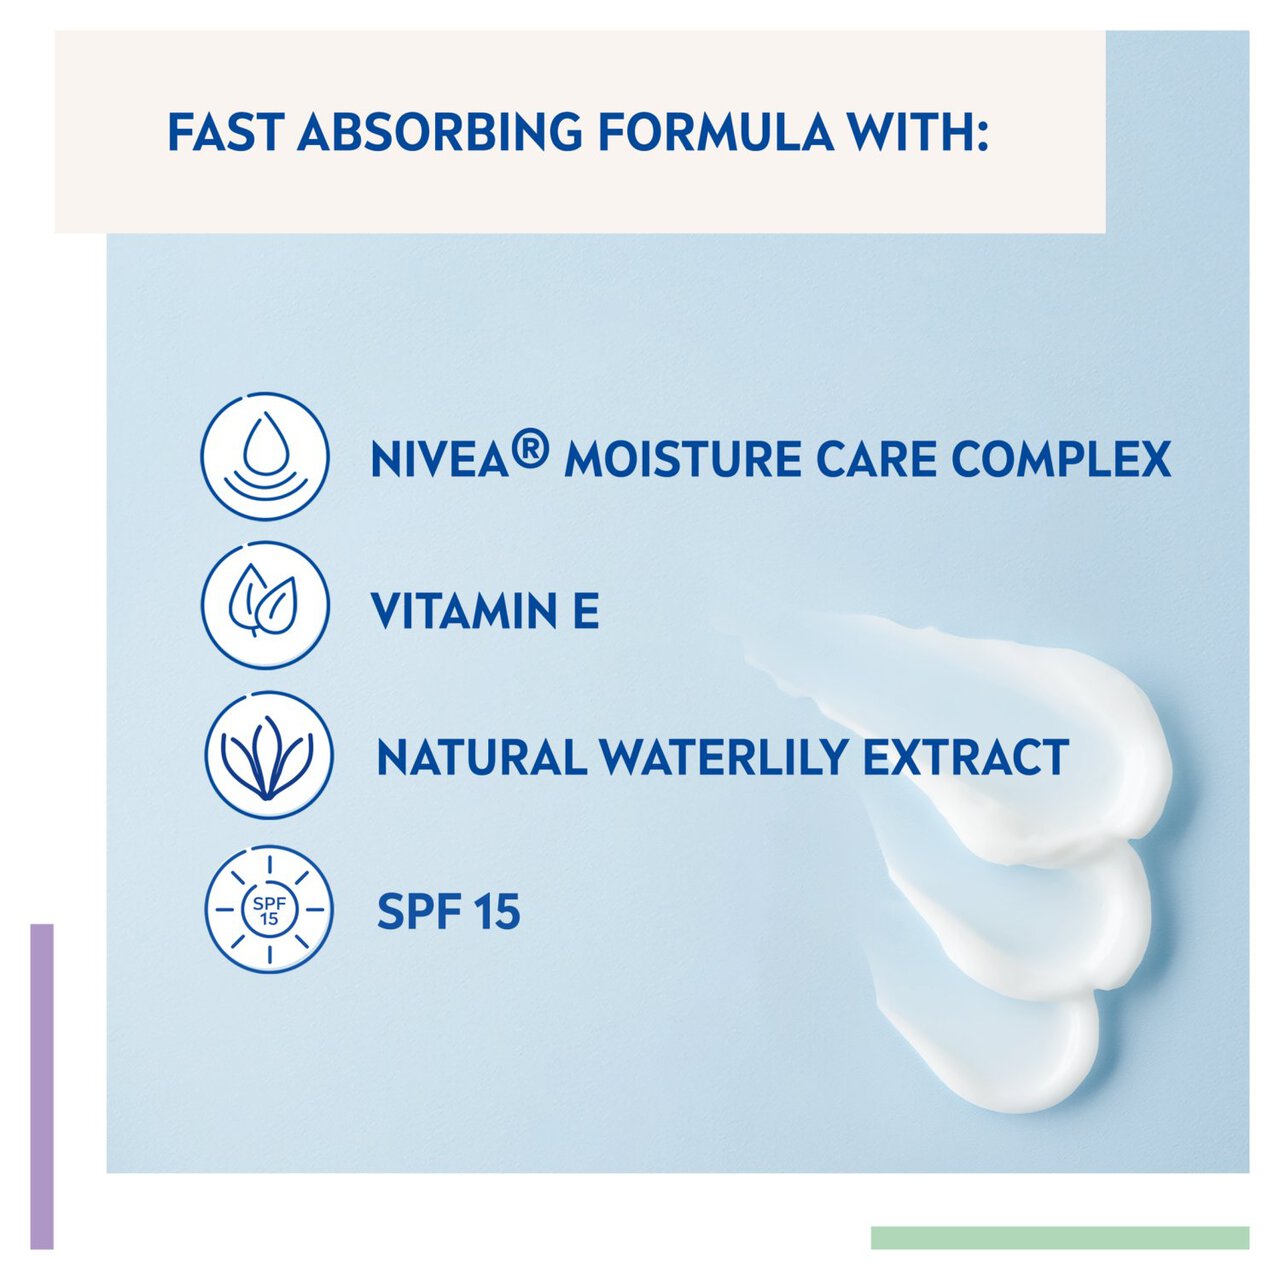 NIVEA Day Cream Face Moisturiser for Normal Skin SPF15 50ml